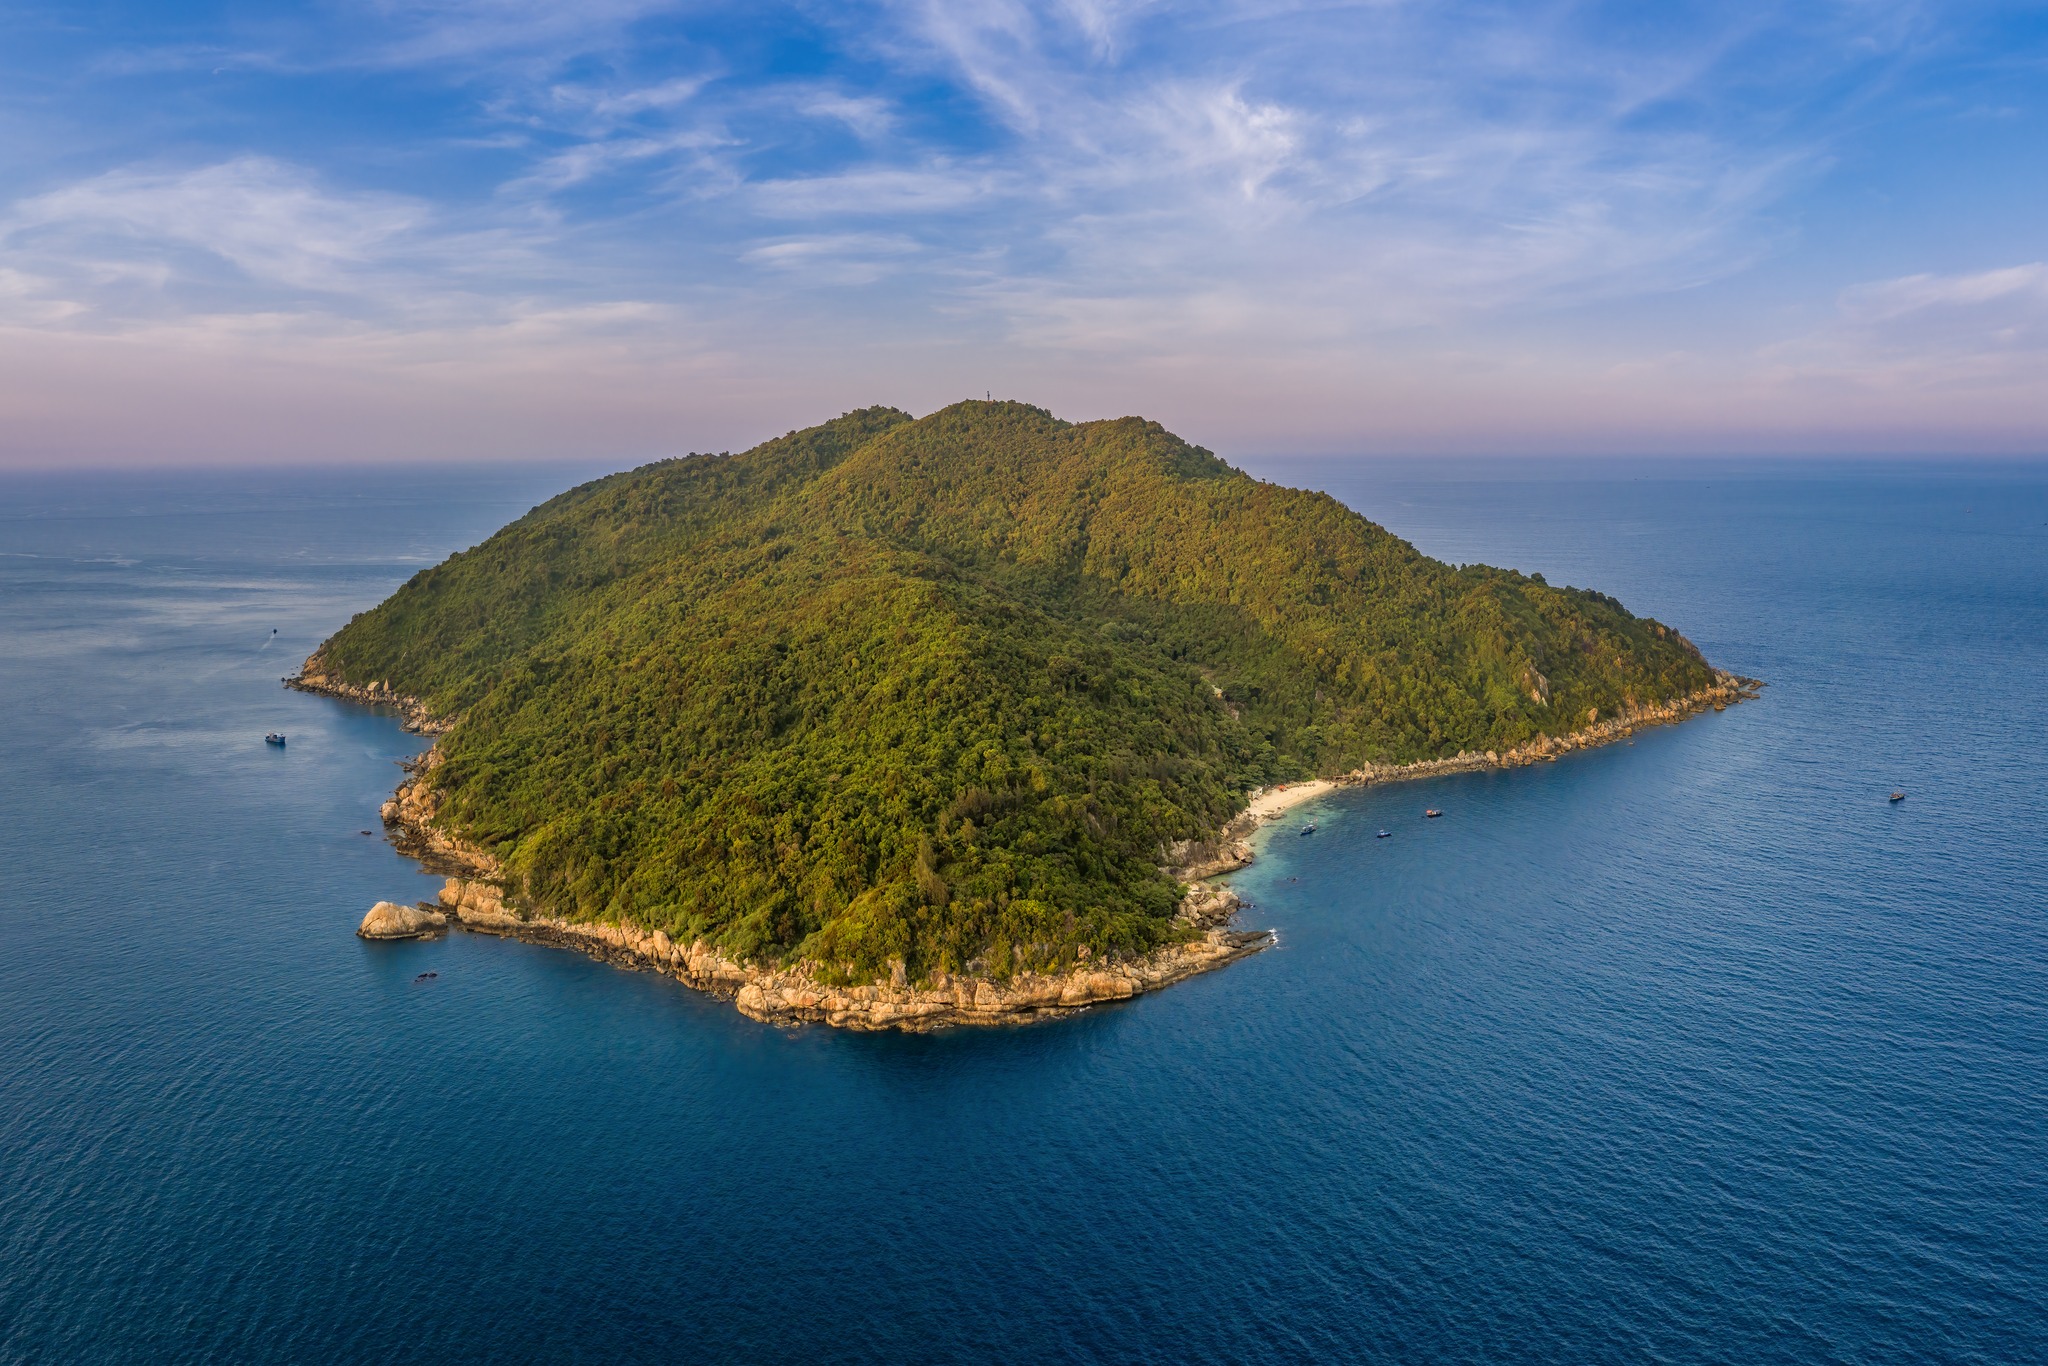 Đảo Ngọc (còn có các tên gọi đảo Huyền Trân, hòn Sơn Chà, hòn Chảo) là hòn đảo nằm giữa biển án ngữ bên ngoài vịnh Lăng Cô, cũng là thắng cảnh thiên nhiên tuyệt đẹp chưa được khai thác nhiều